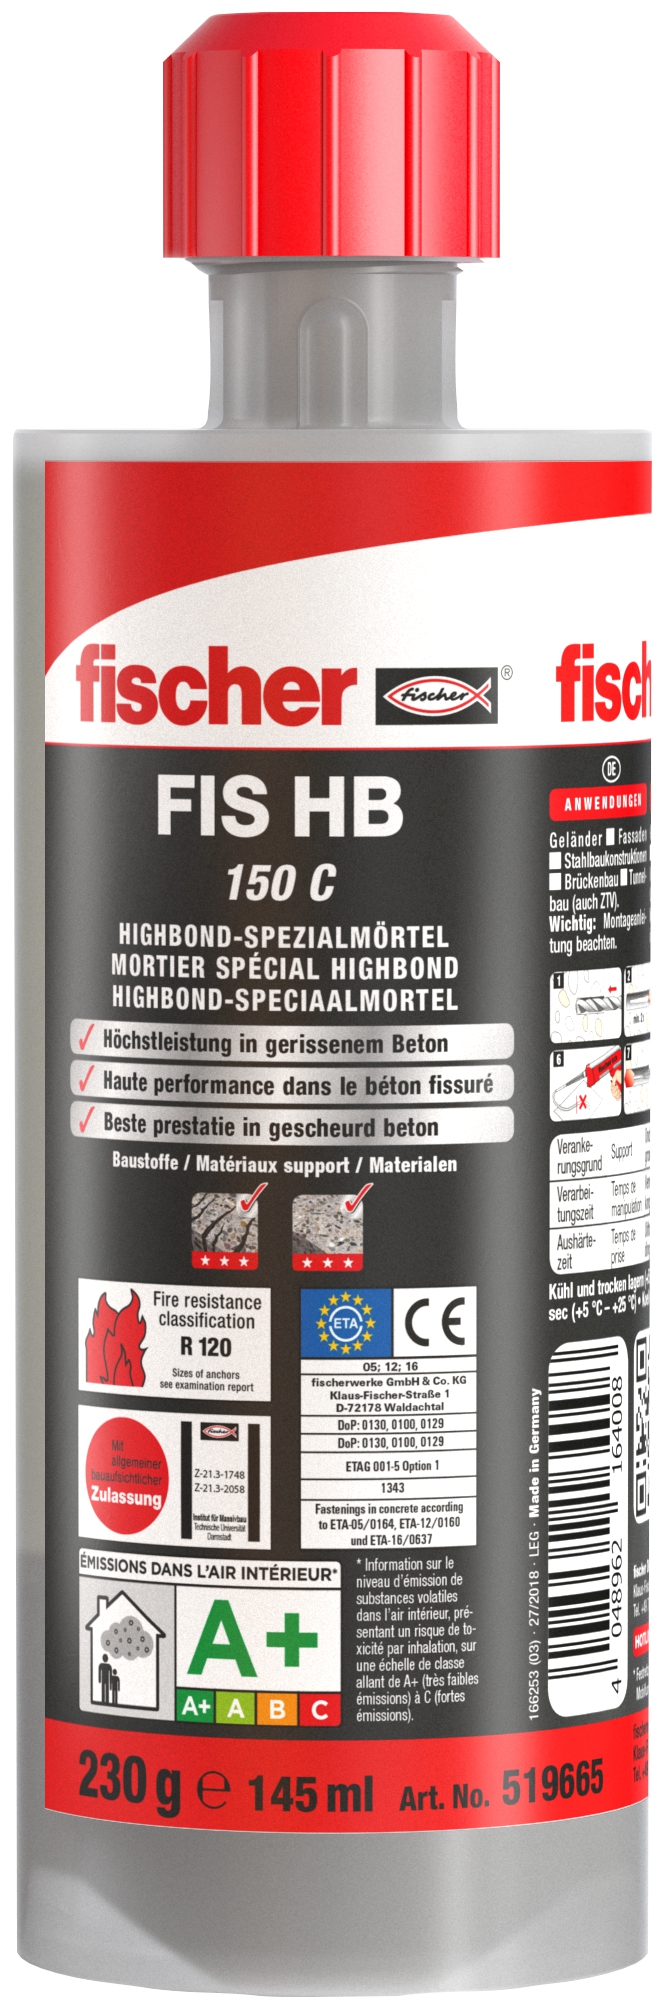 Fischer FIS HB 150 C. Höchstleistung in gerissenem Beton mit Injektionsmörtel aus kompakter Kartusche.